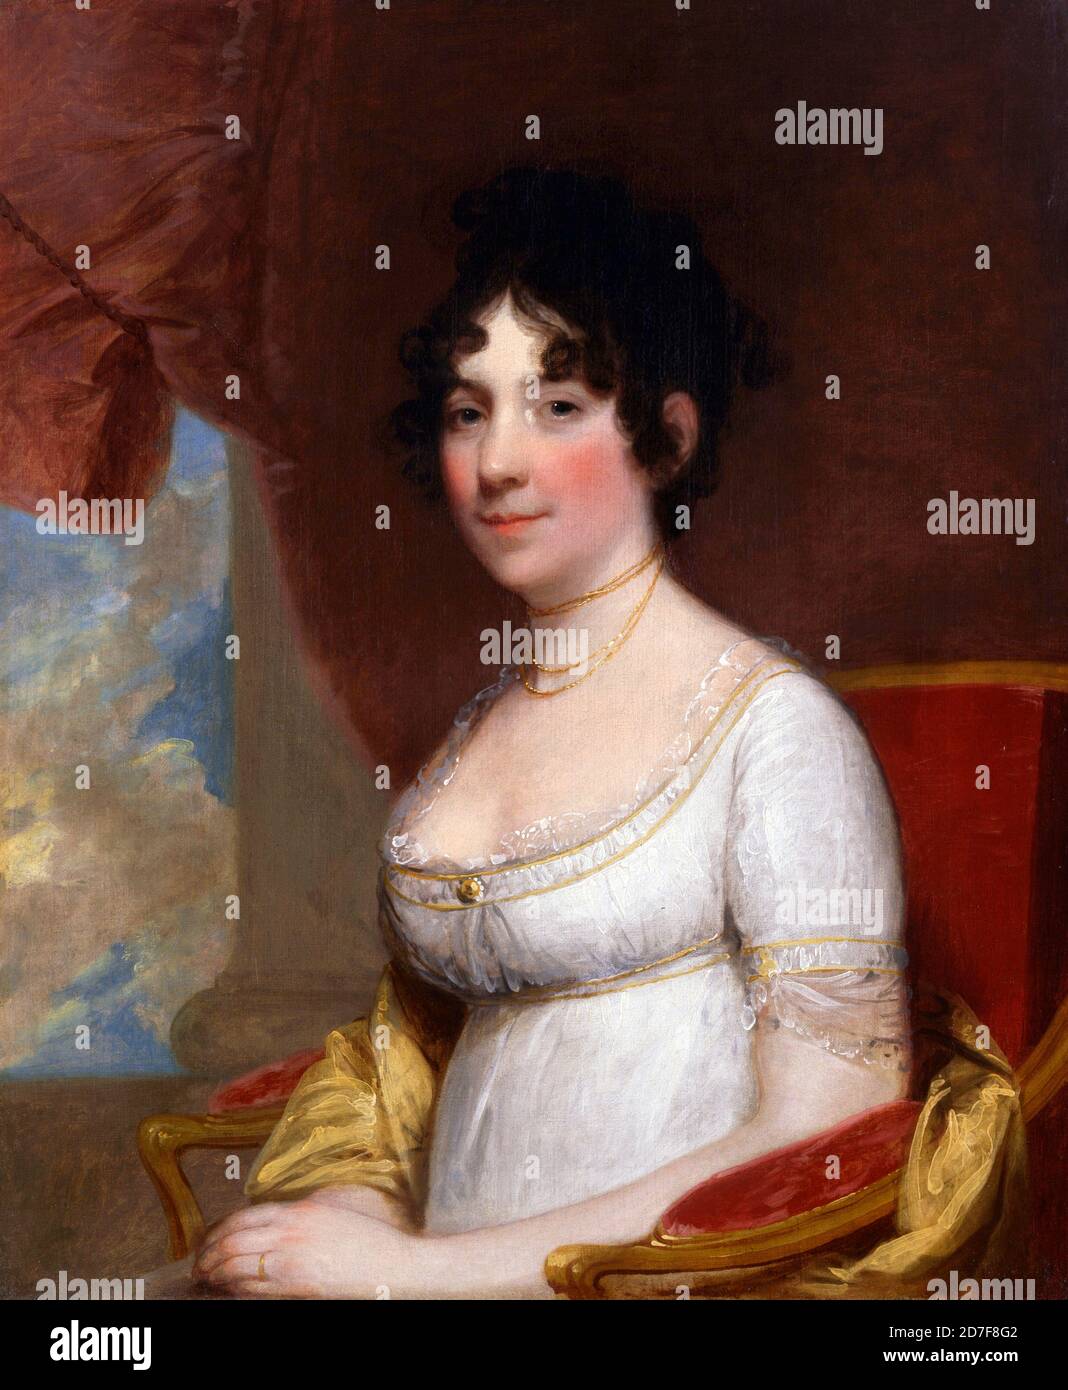 Dolley Madison. Ritratto di Dolley Todd Madison (nata Payne, 1768-1849) di Gilbert Stuart, olio su tela, 1804. Dolley Madison era la moglie di James Madison, il quarto presidente degli Stati Uniti Foto Stock